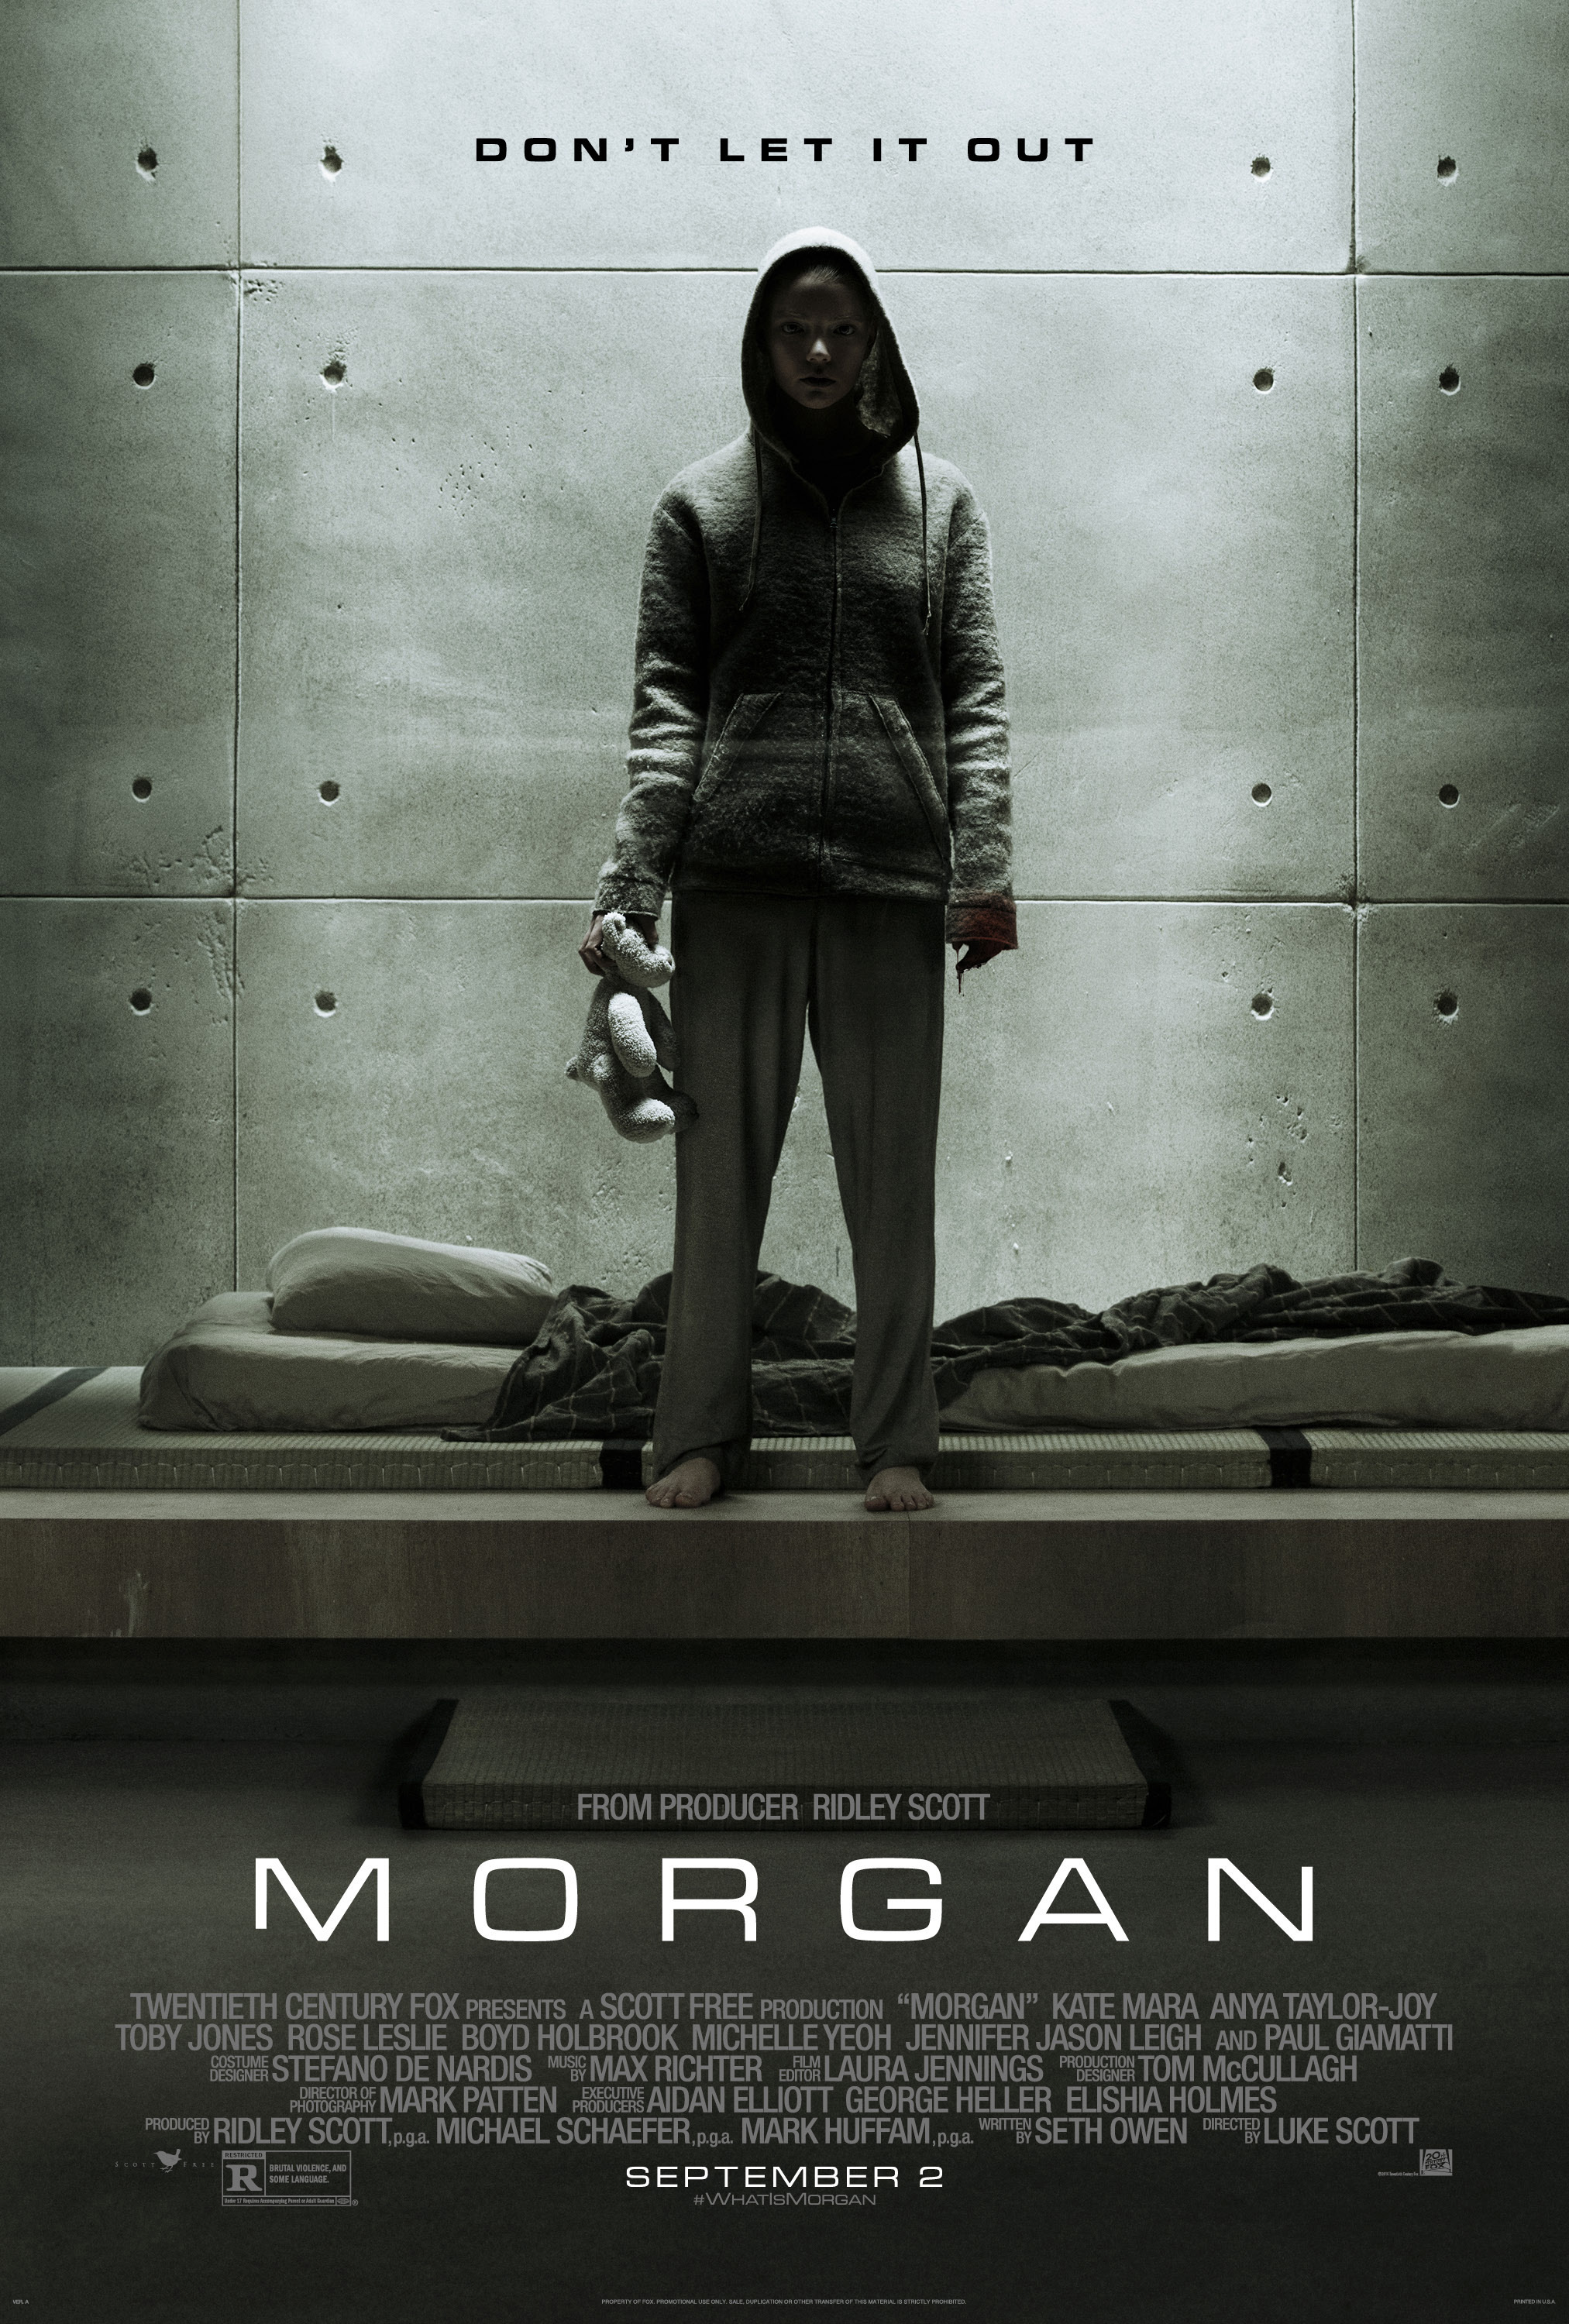 313-morgan_movie_poster.jpg